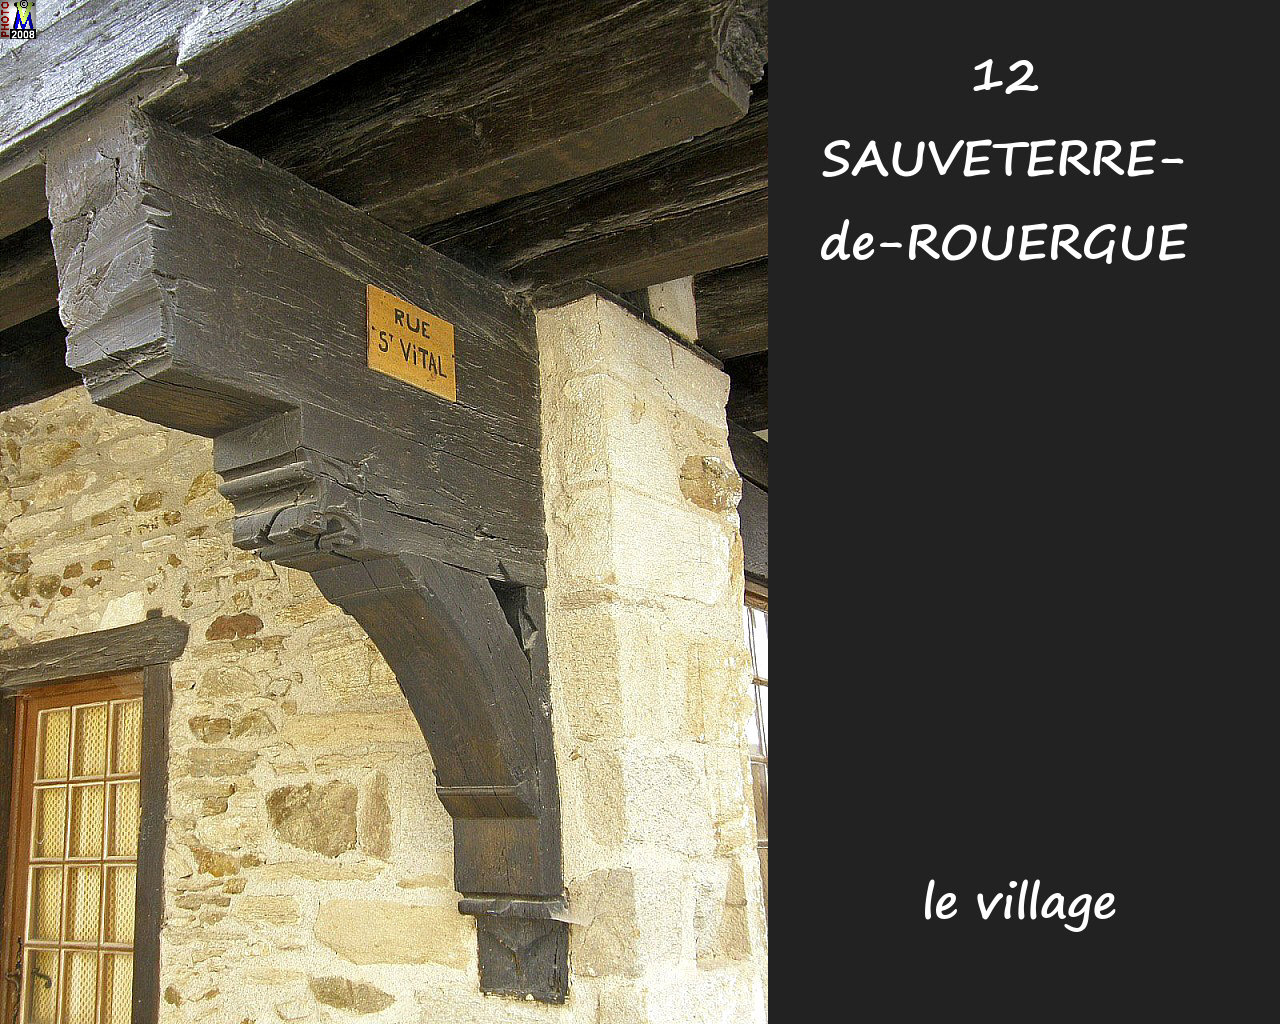 12SAUVETERRE-ROUERGUE_village_136.jpg